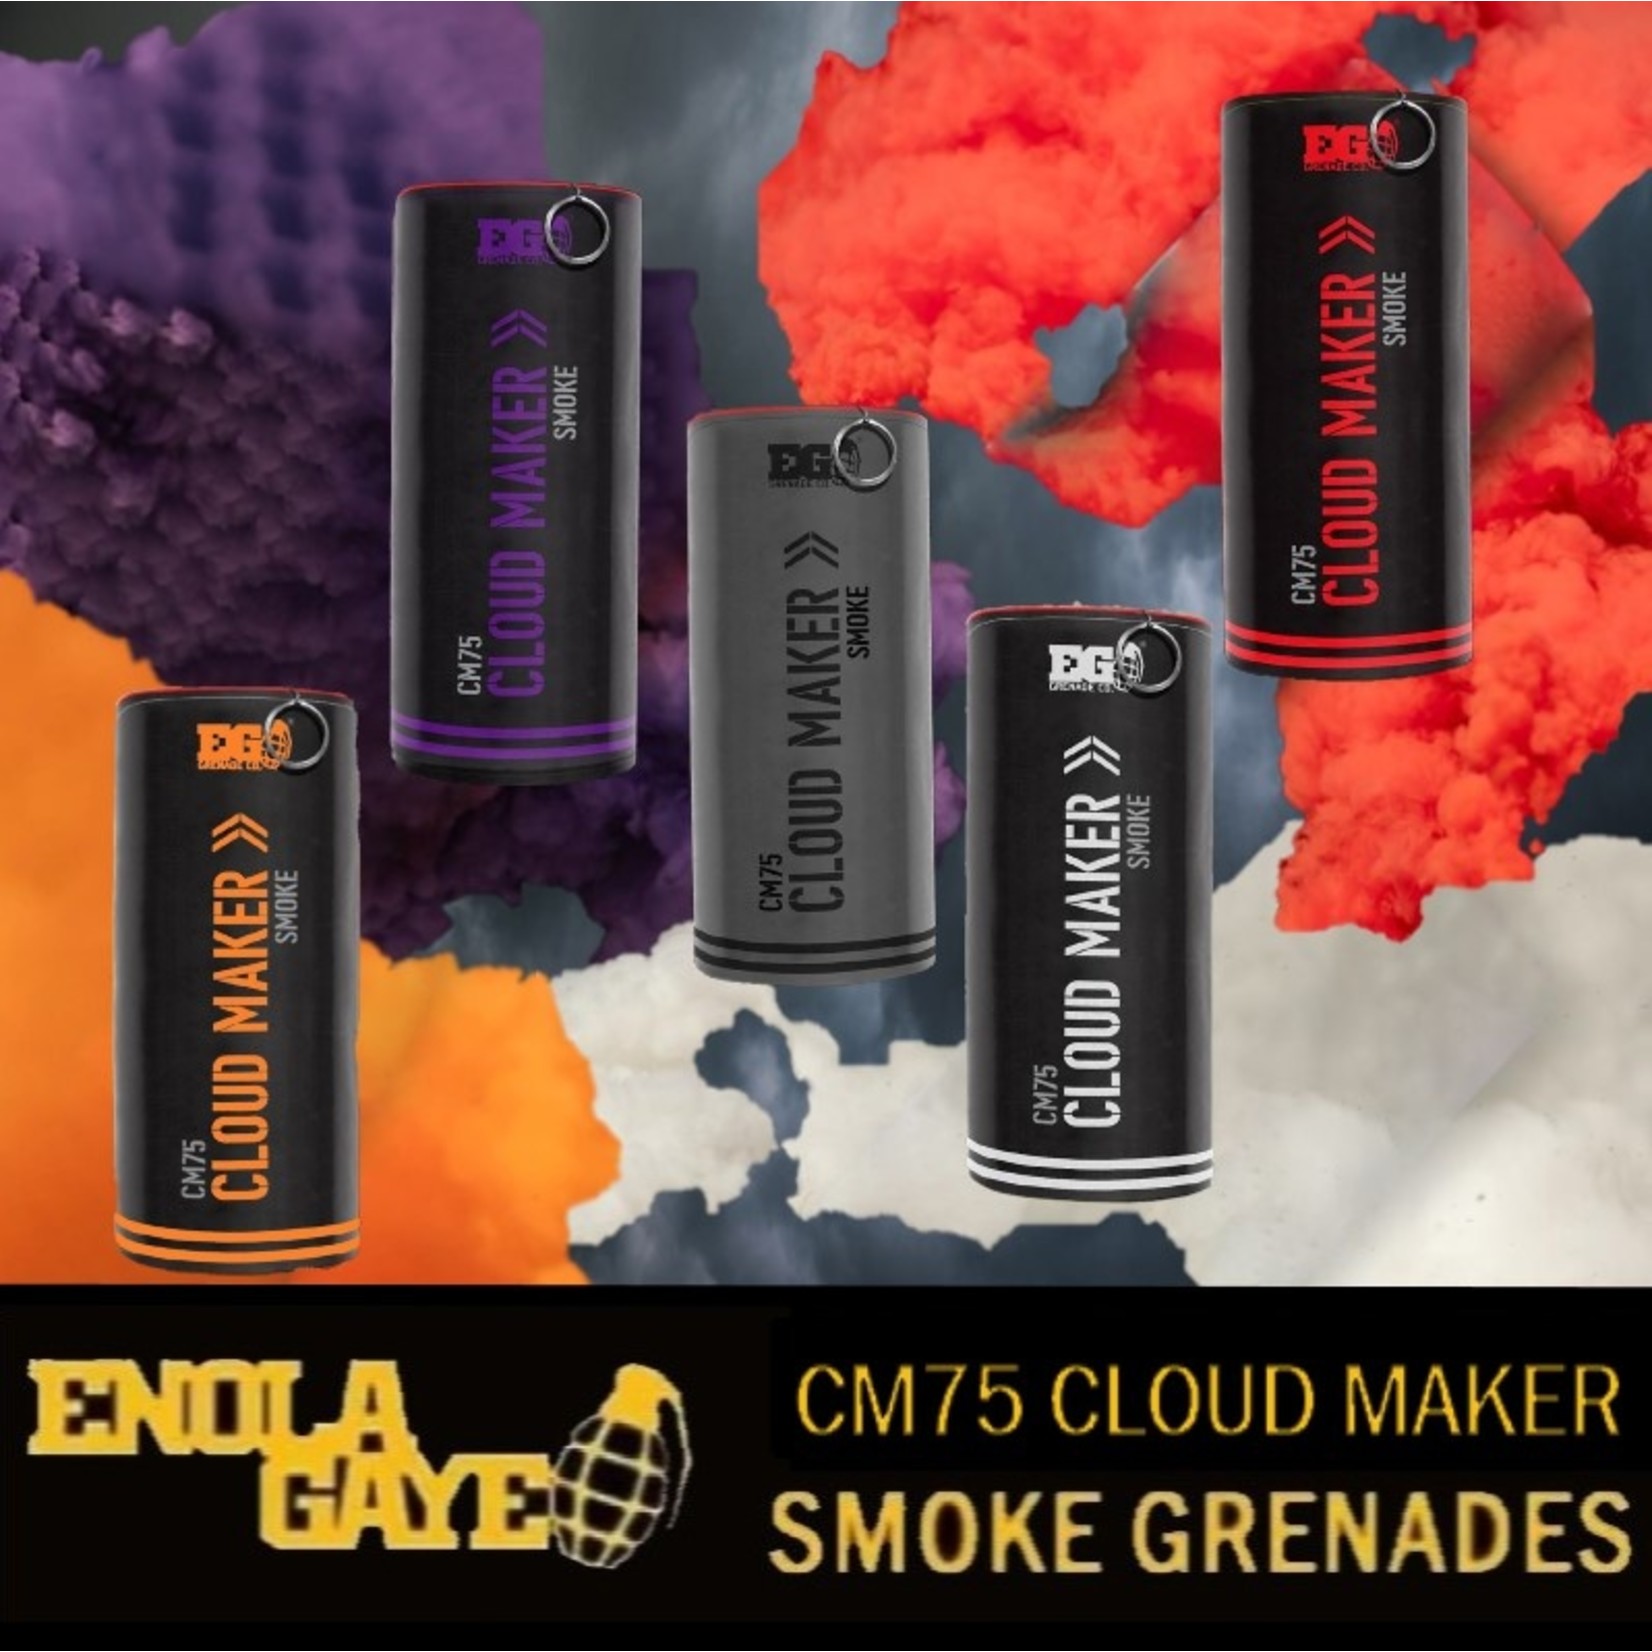 CM75 Cloud Maker